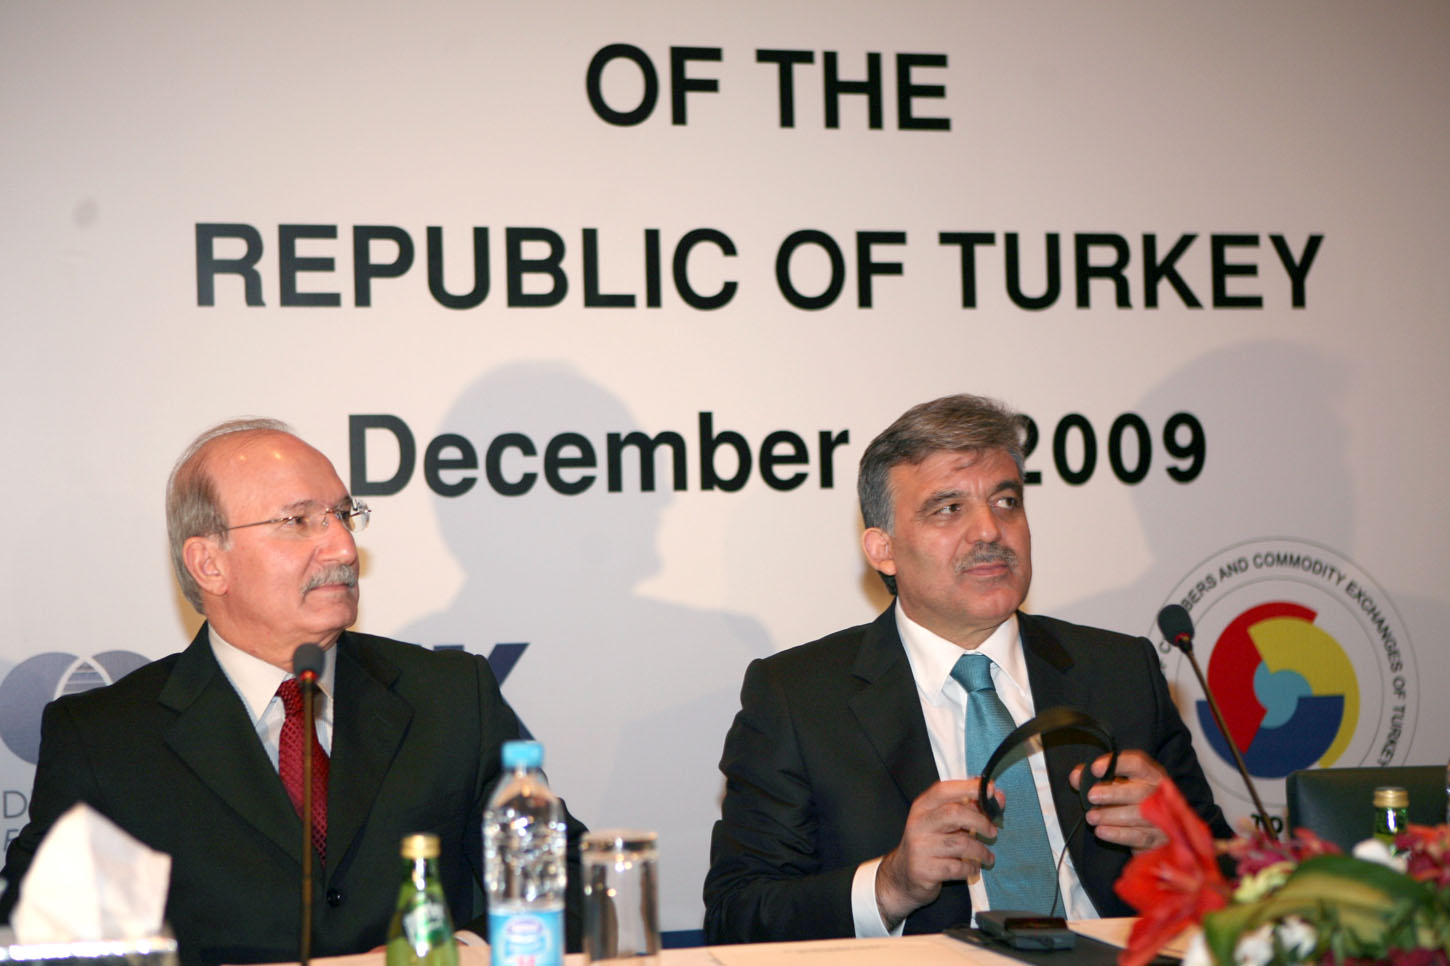 الرئيس التركي يؤكد ان القضية الفلسطينية هي قضية اسلامية خلال منتدى الاعمال الاردني - التركي